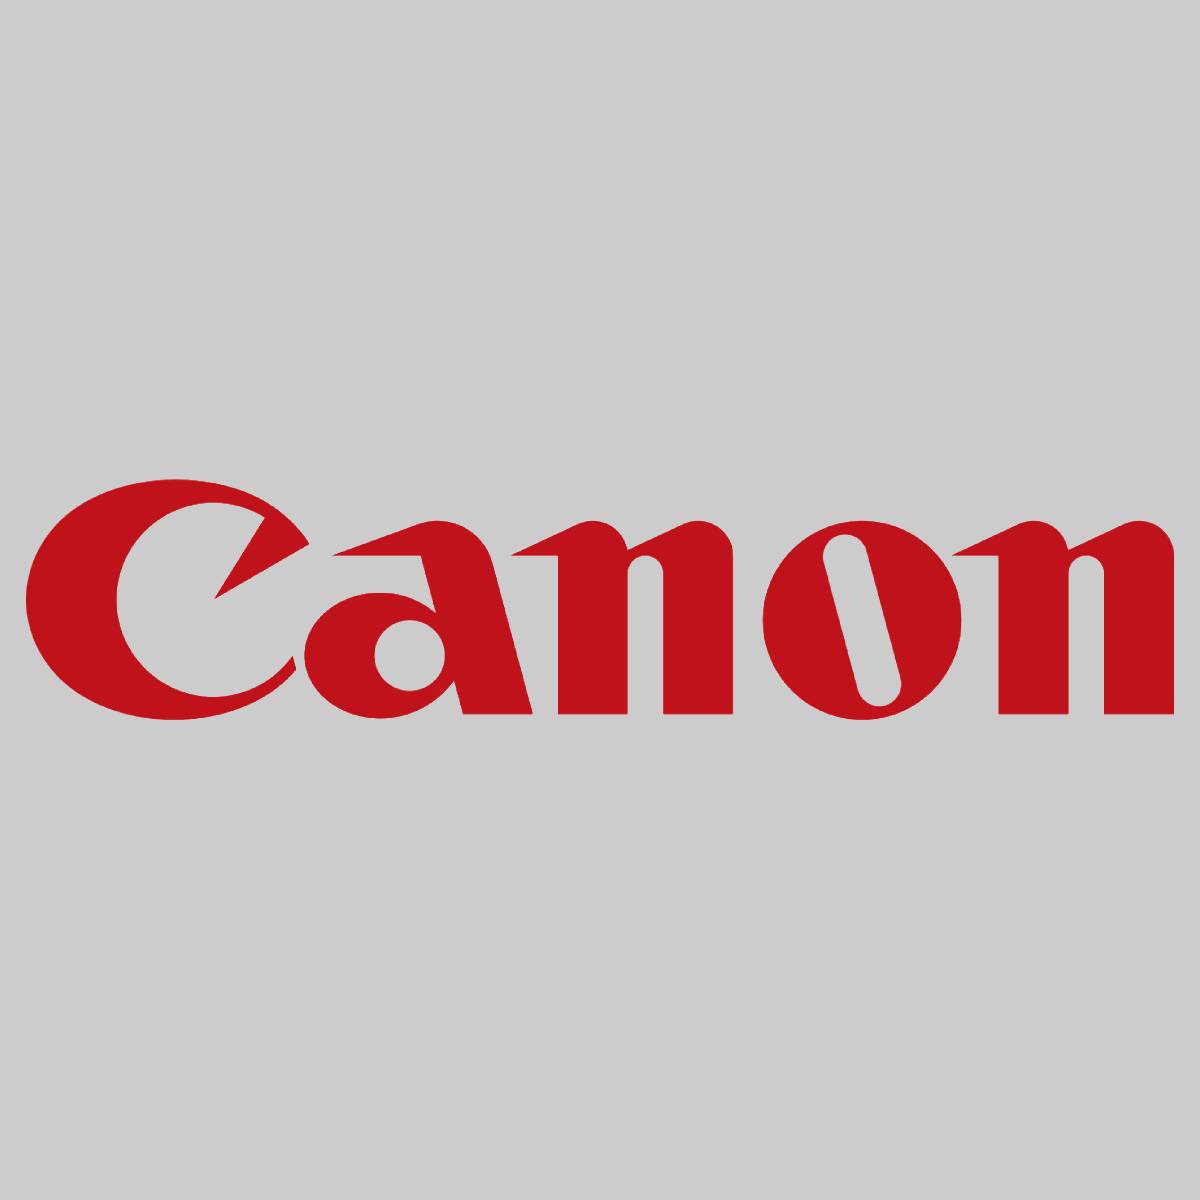 "Toner d'origine Canon C-EXV 19 Cyan 0398B002 pour imagePRESS C 1 imagePRESS C 1 P